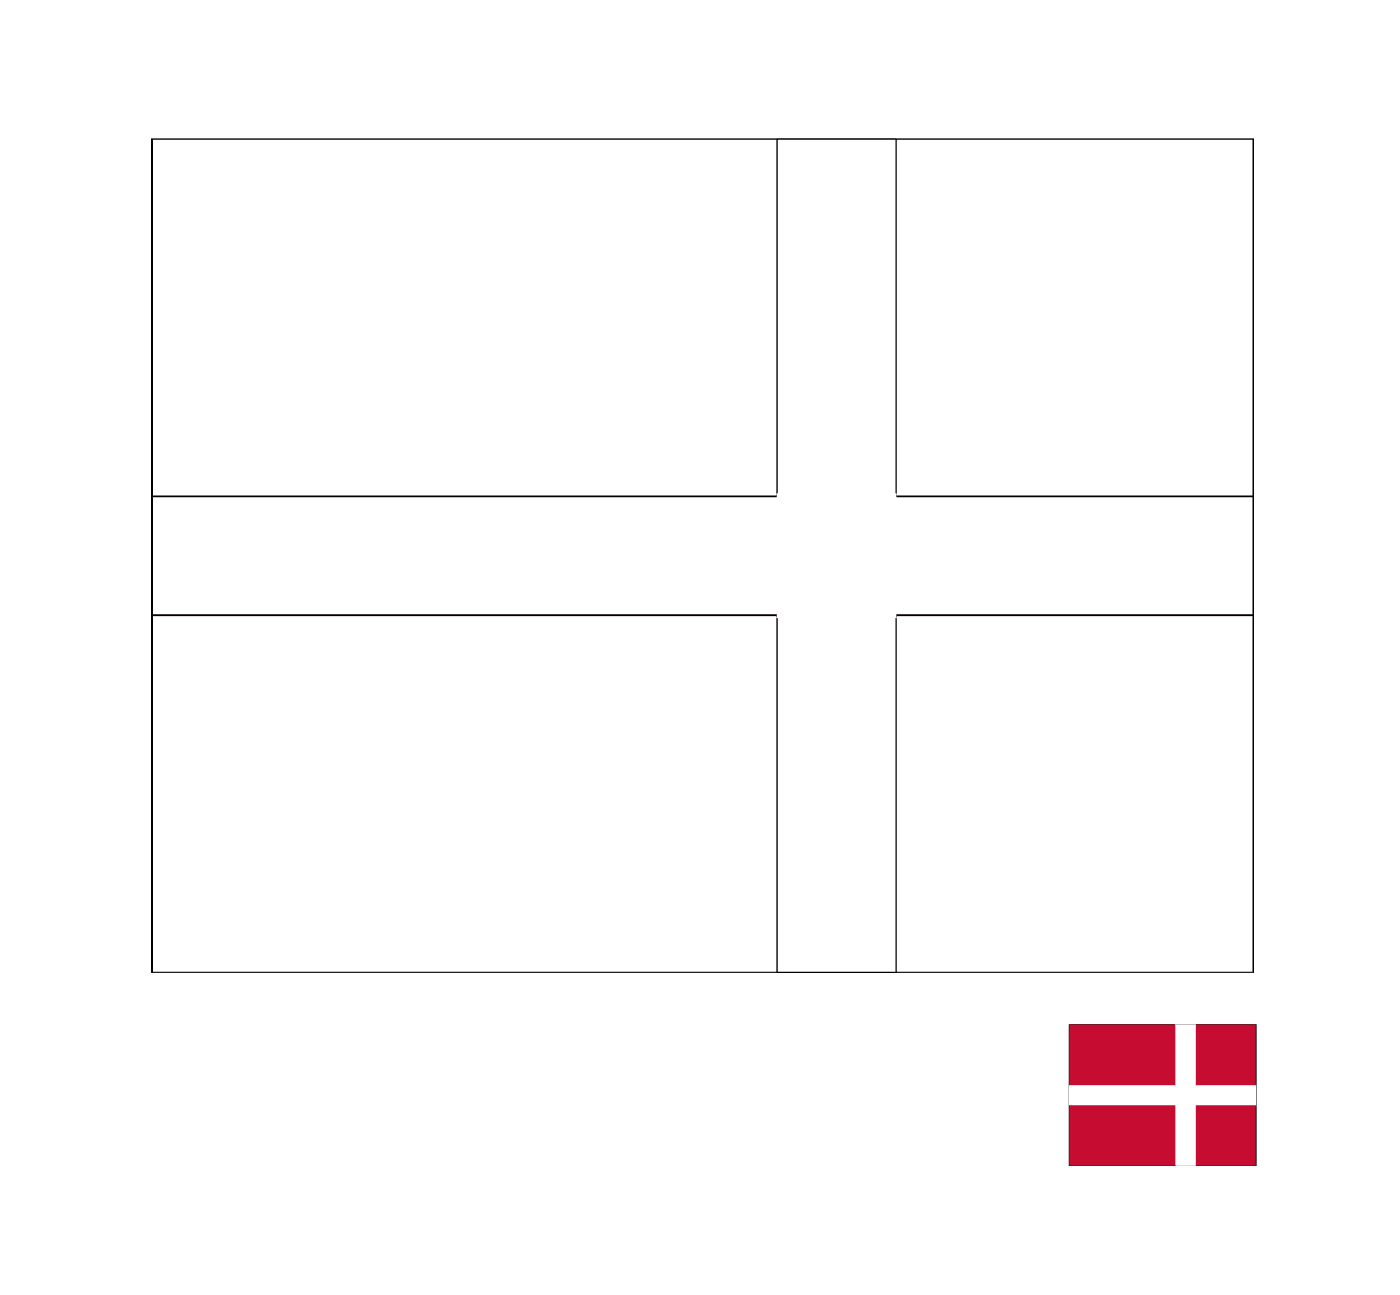  डेनमार्क का झंडा 